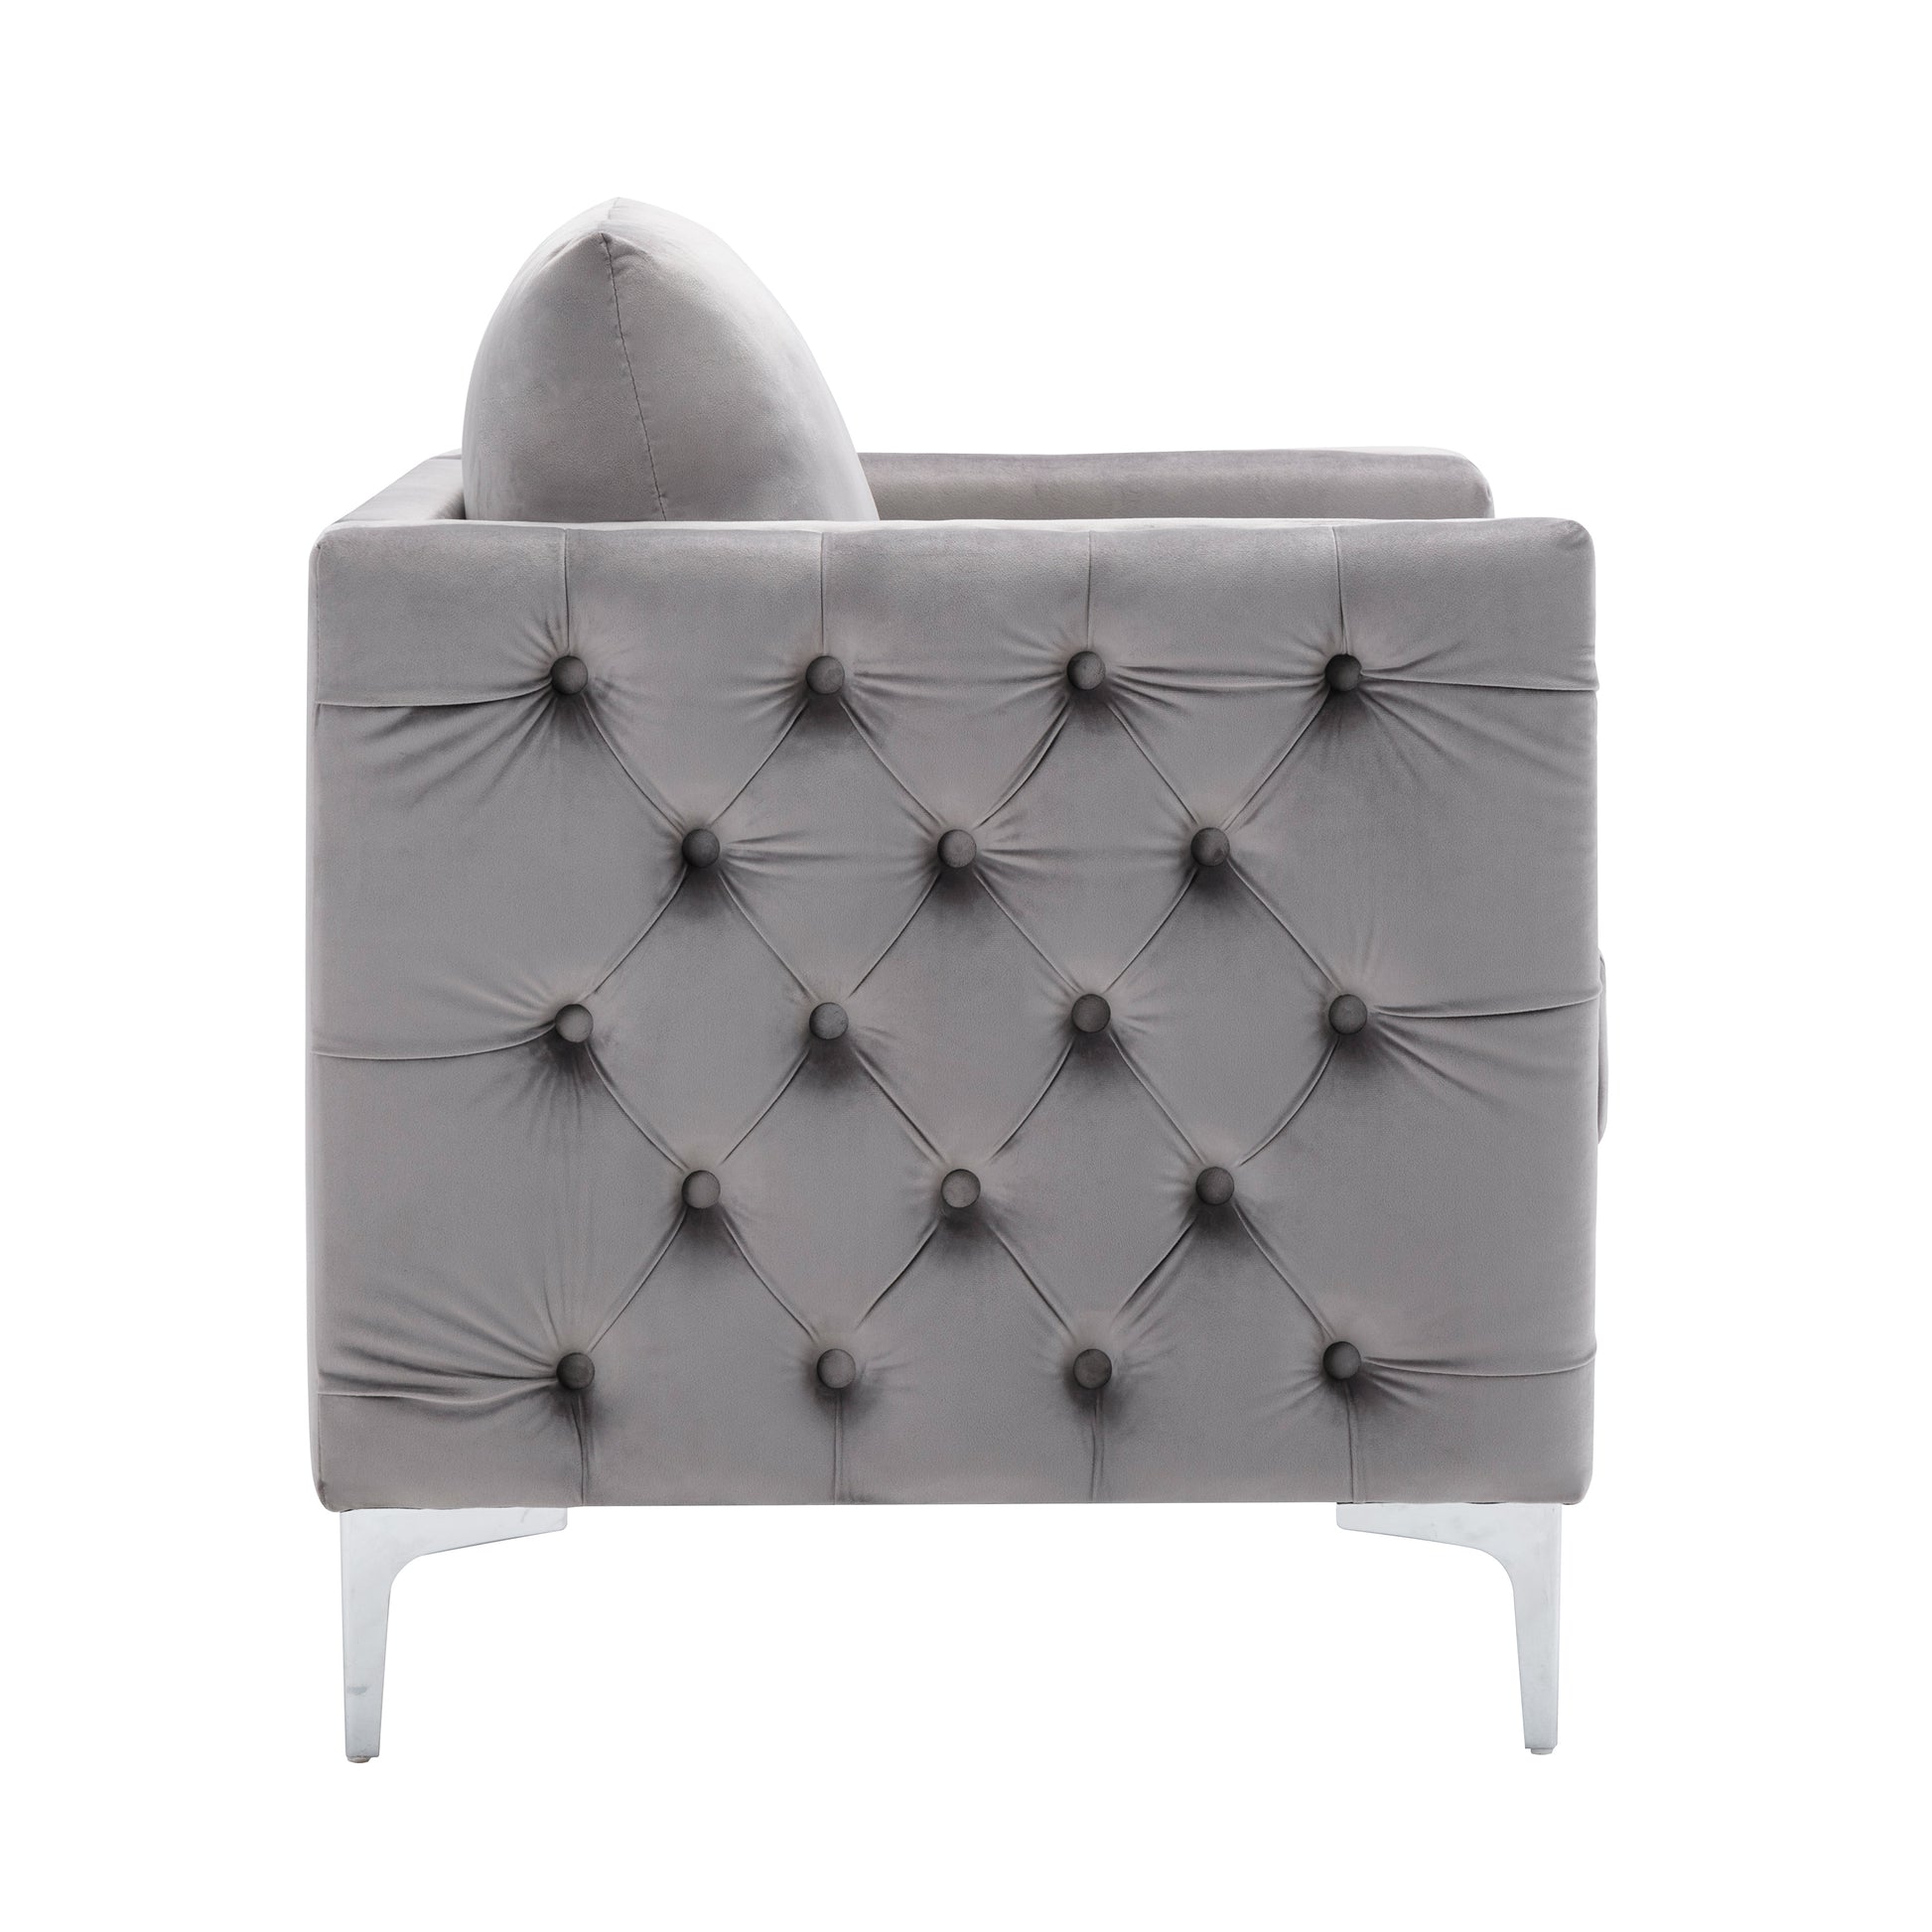 Bed-Best Modern Velvet Club Chair - Gray